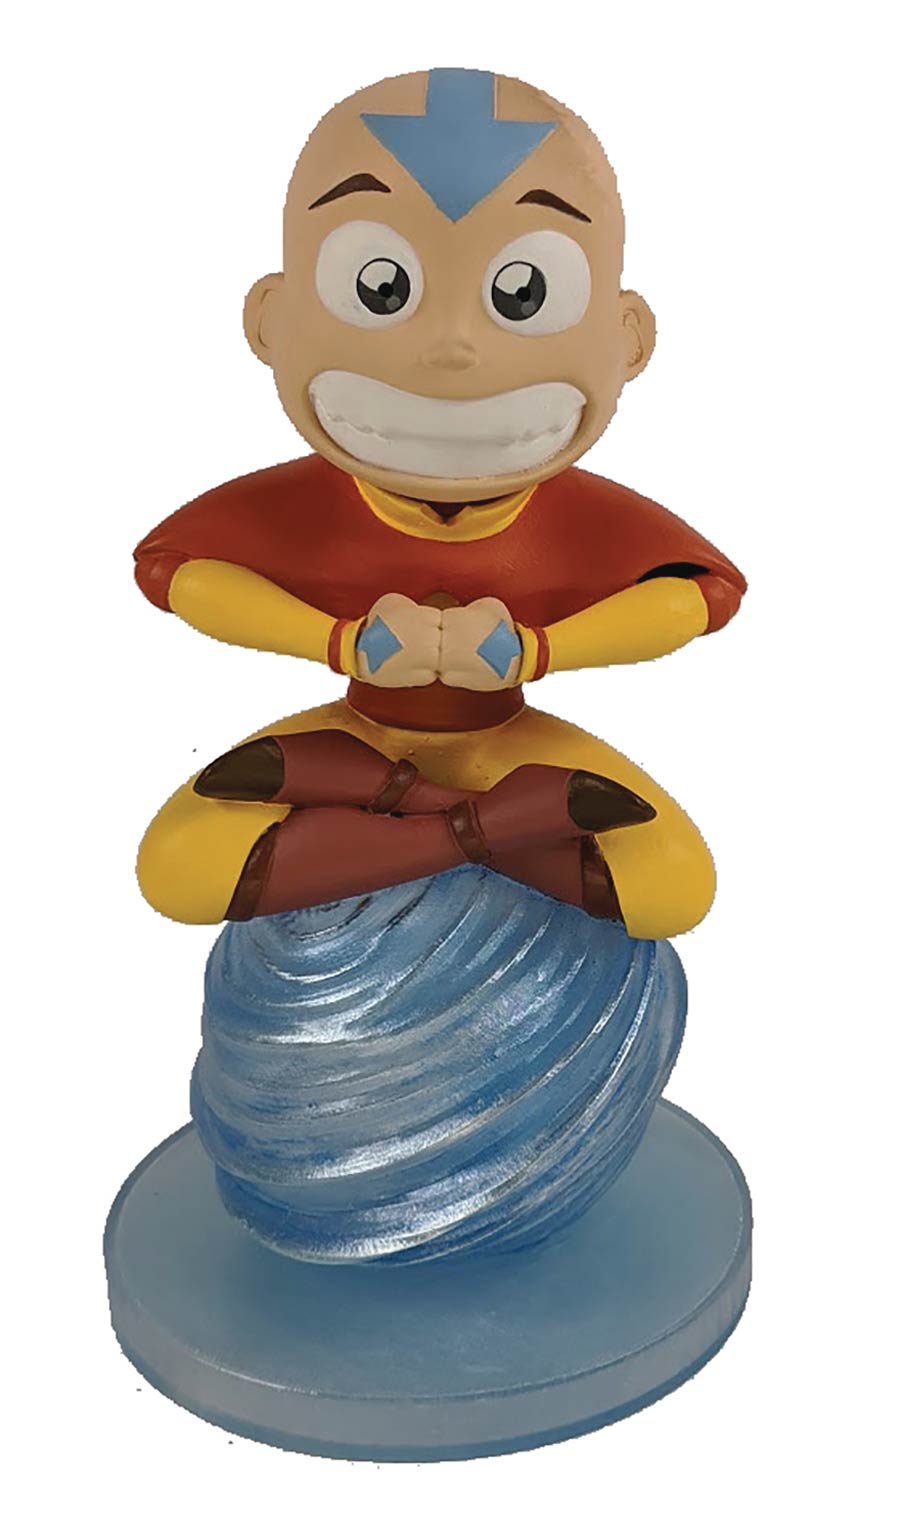 Avatar The Last Airbender Aang Gnerd Garden Gnome Vinyl Figure